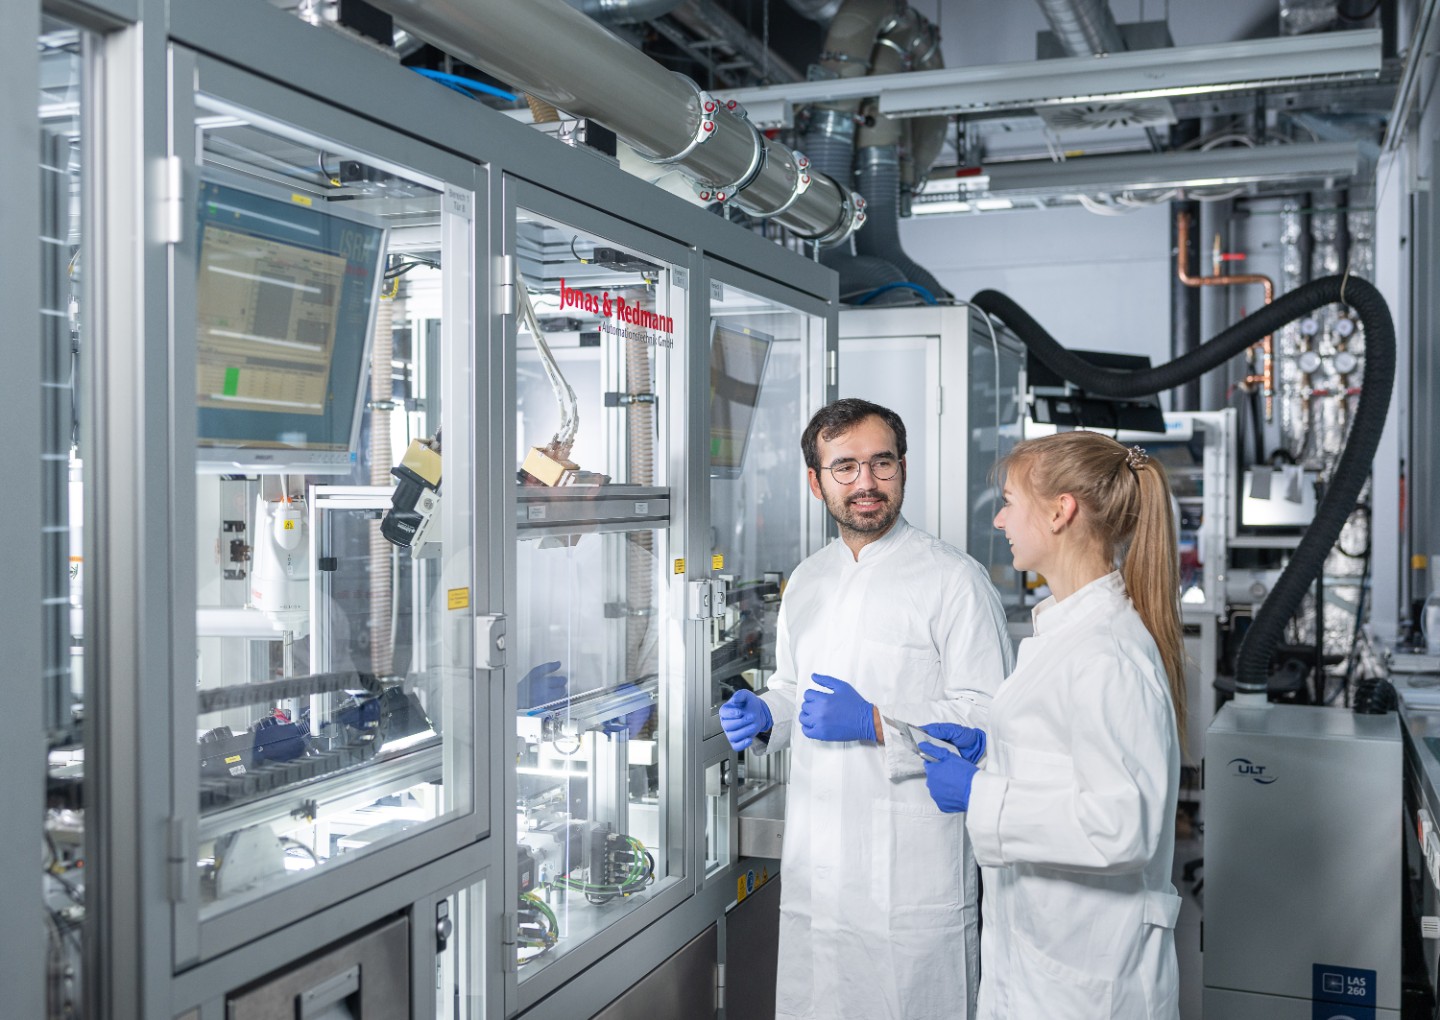 Viện Nghiên cứu Vật liệu và Khoa học chùm tia Fraunhofer phát triển các thành phần cho hệ vật liệu mới của pin thể rắn. Nguồn: Fraunhofer IWS